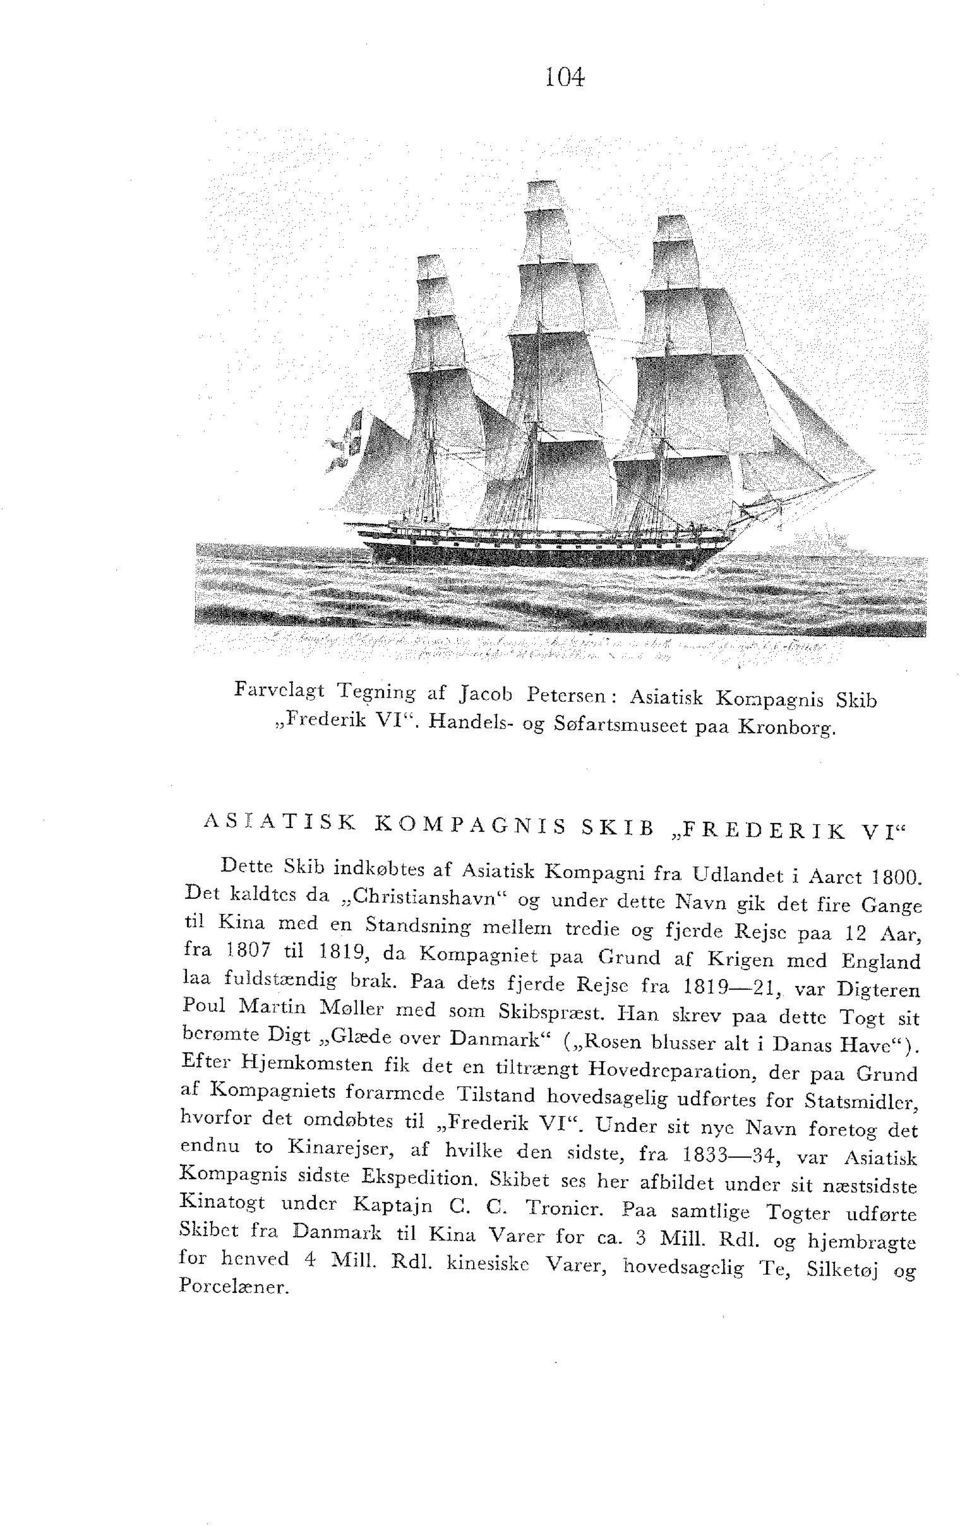 England laa fuldstændig brak. Paa dets fjerde Rejse fra 1819 21, var Digteren Poul Martin Møller med som Skibspræst.